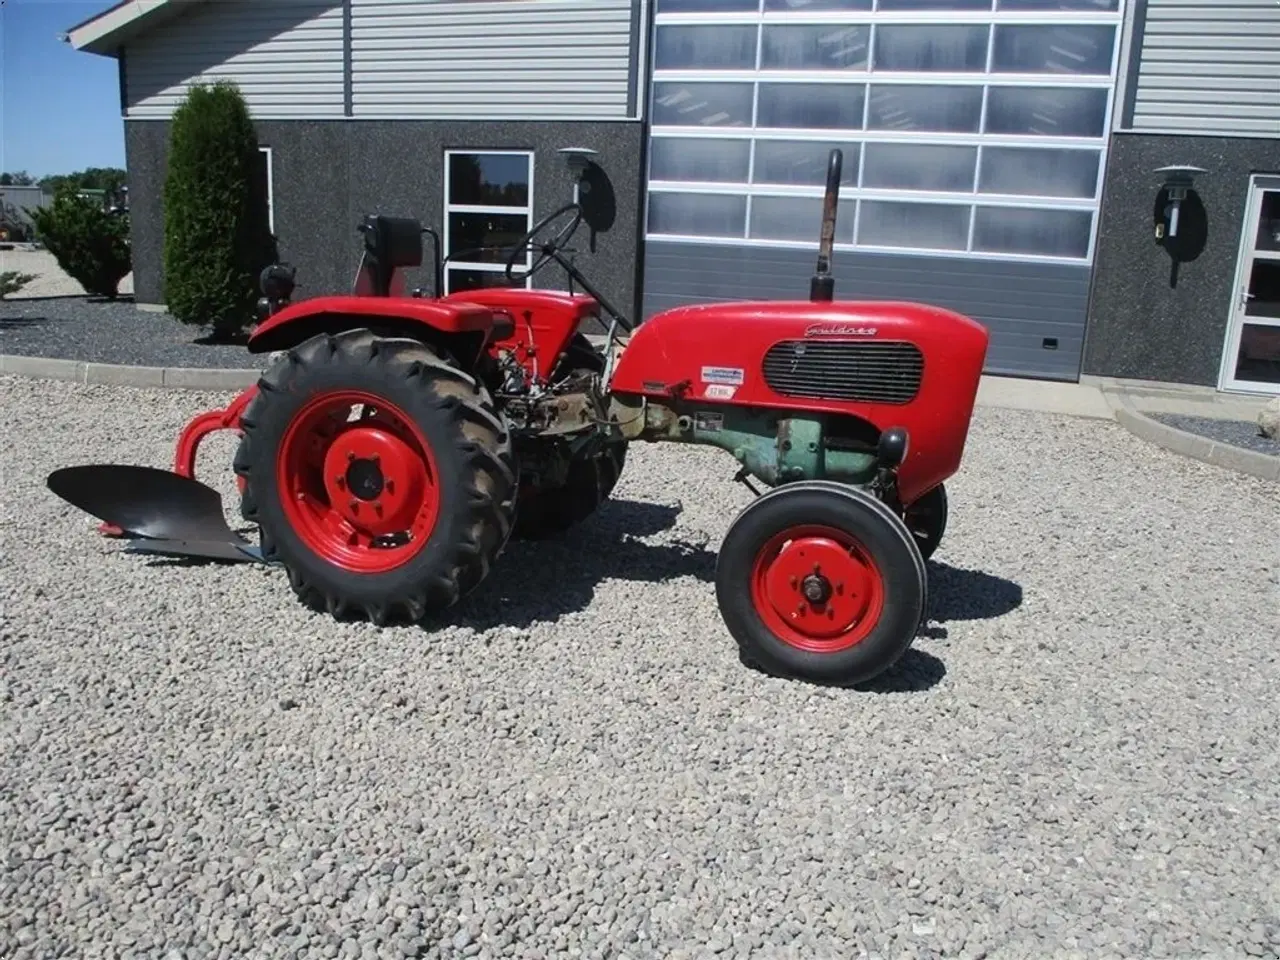 Billede 13 - - - - Komplet sæt med traktor og Plov. Güldner 17 HK traktor og 1furet Langeskov plov. Prisen for sættet komplet.